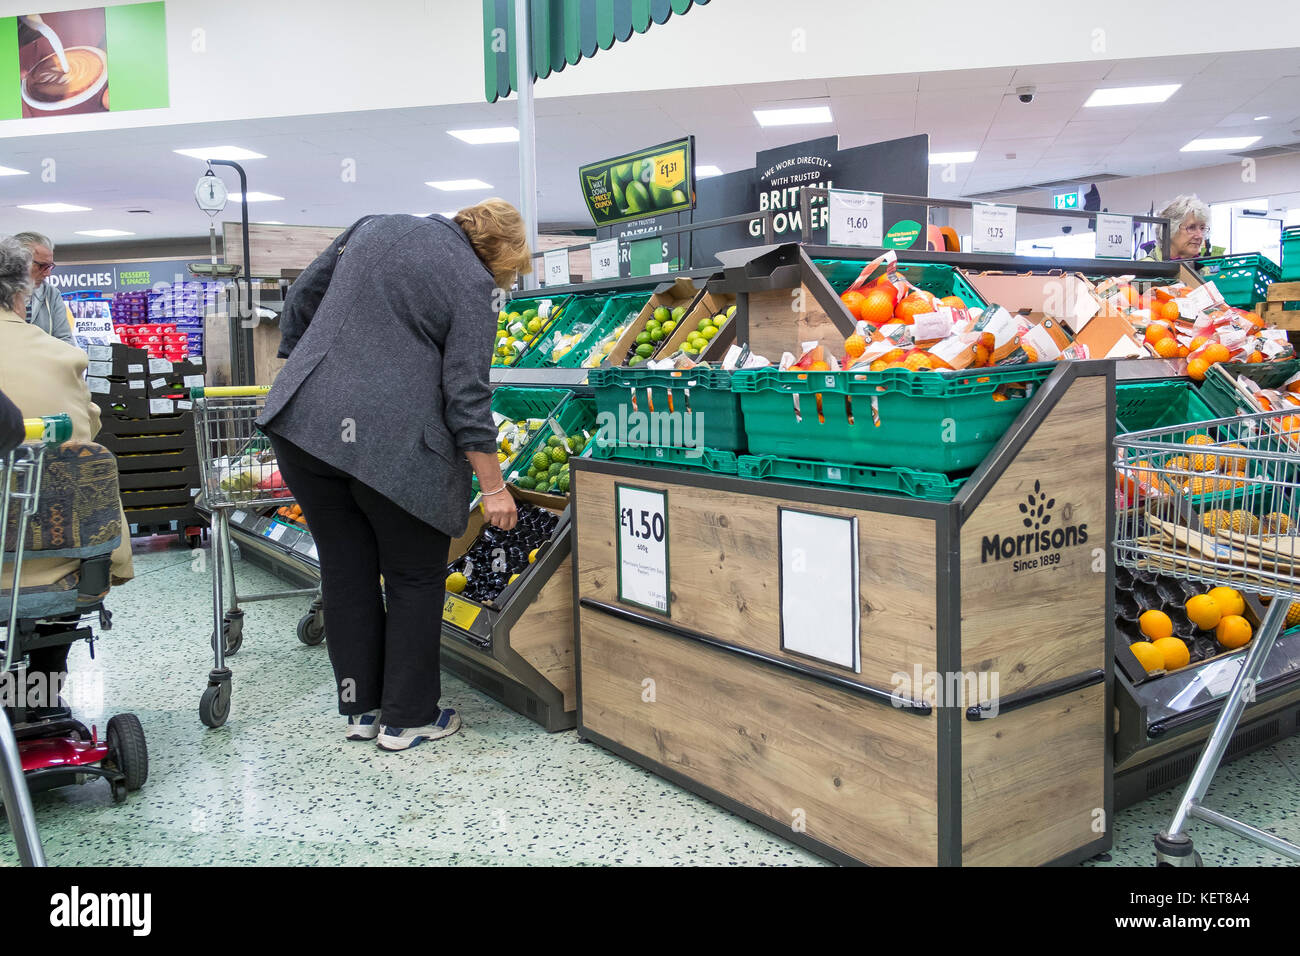 Shopping dans un supermarché Morrisons - un client à la recherche de l'affichage de fruits frais dans un supermarché Morrisons. Banque D'Images